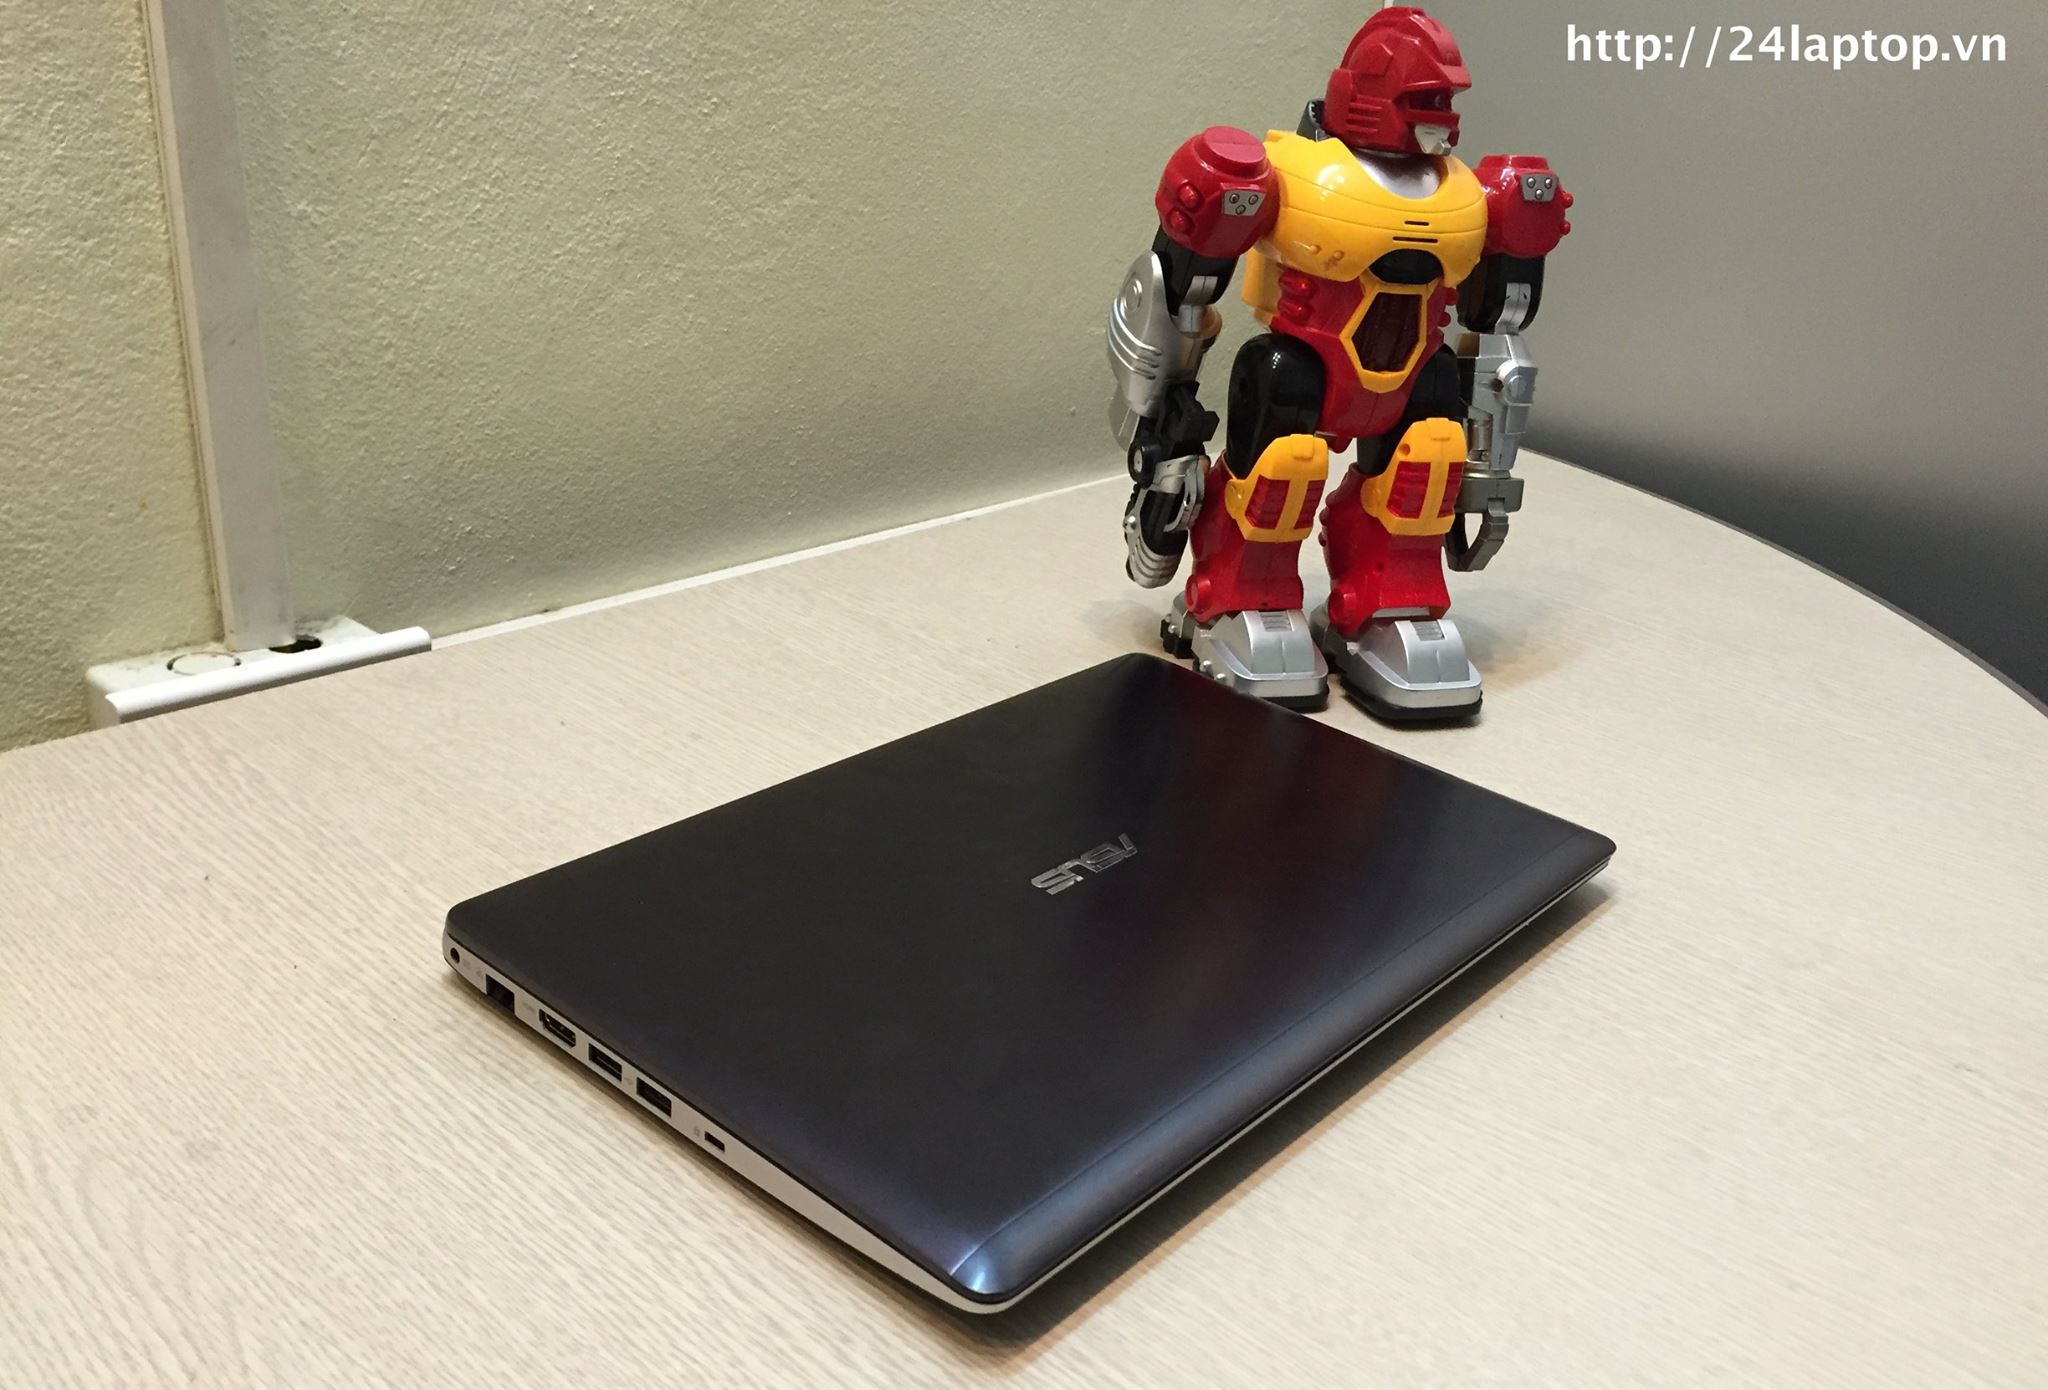 Laptop Asus VivoBook X202E_2.jpg